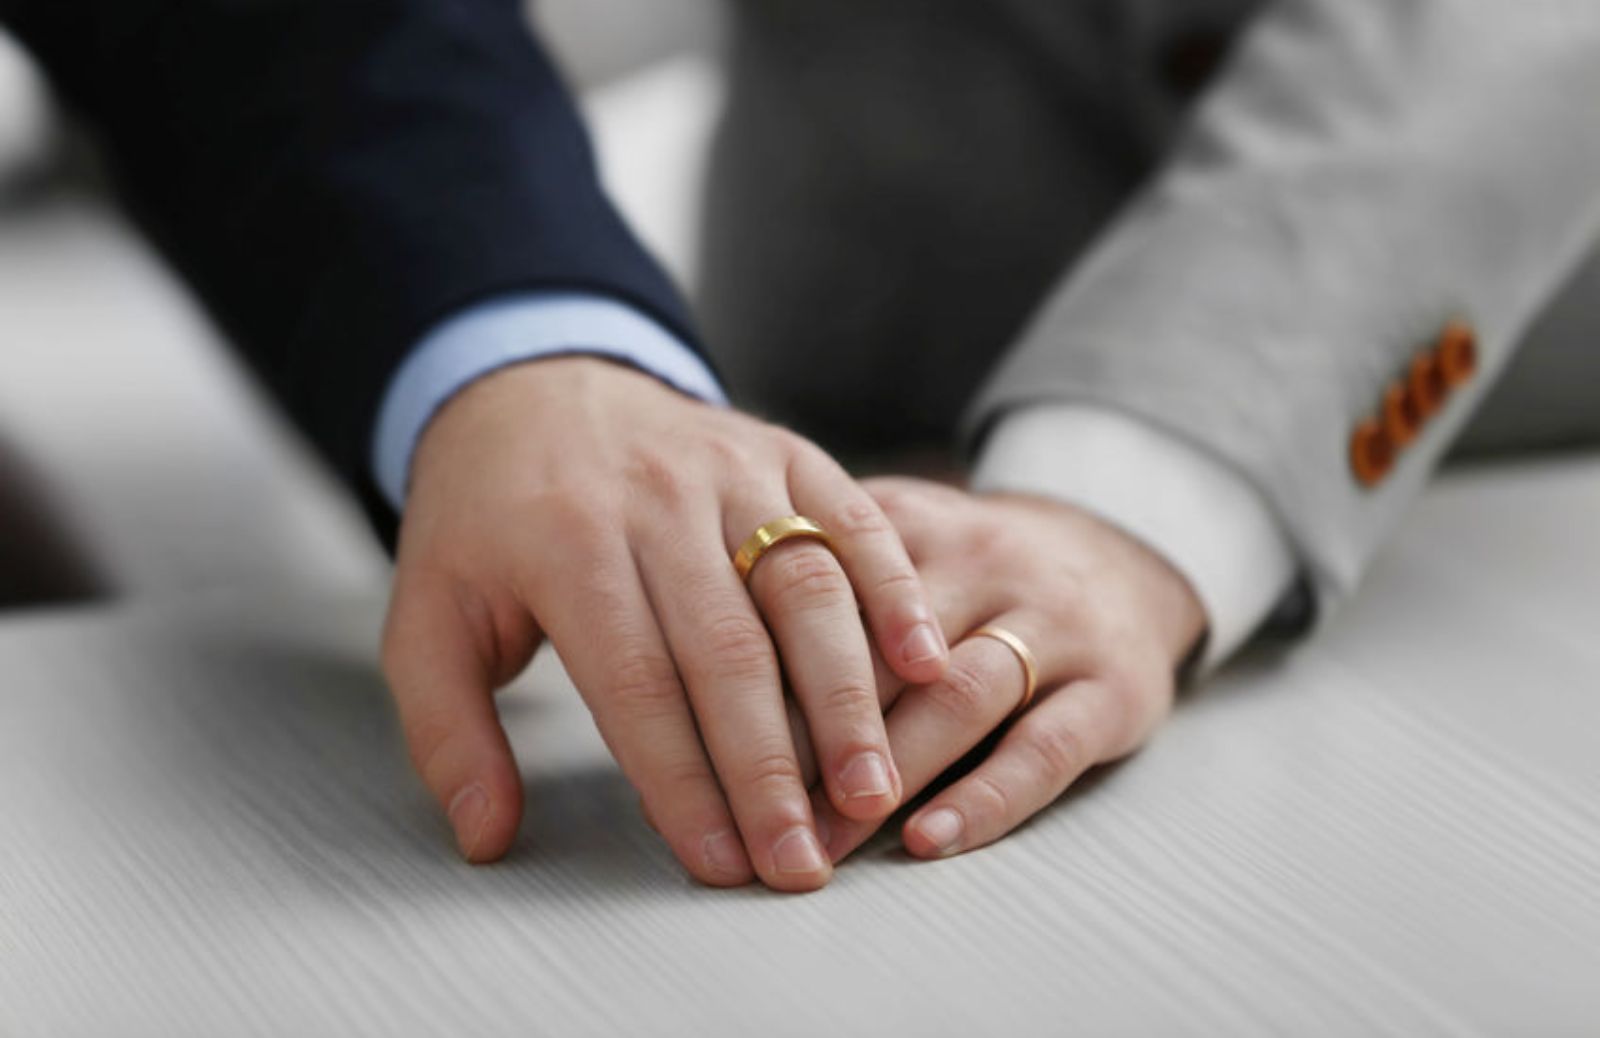 Promessa di matrimonio: regole e tempi da rispettare per sposarsi